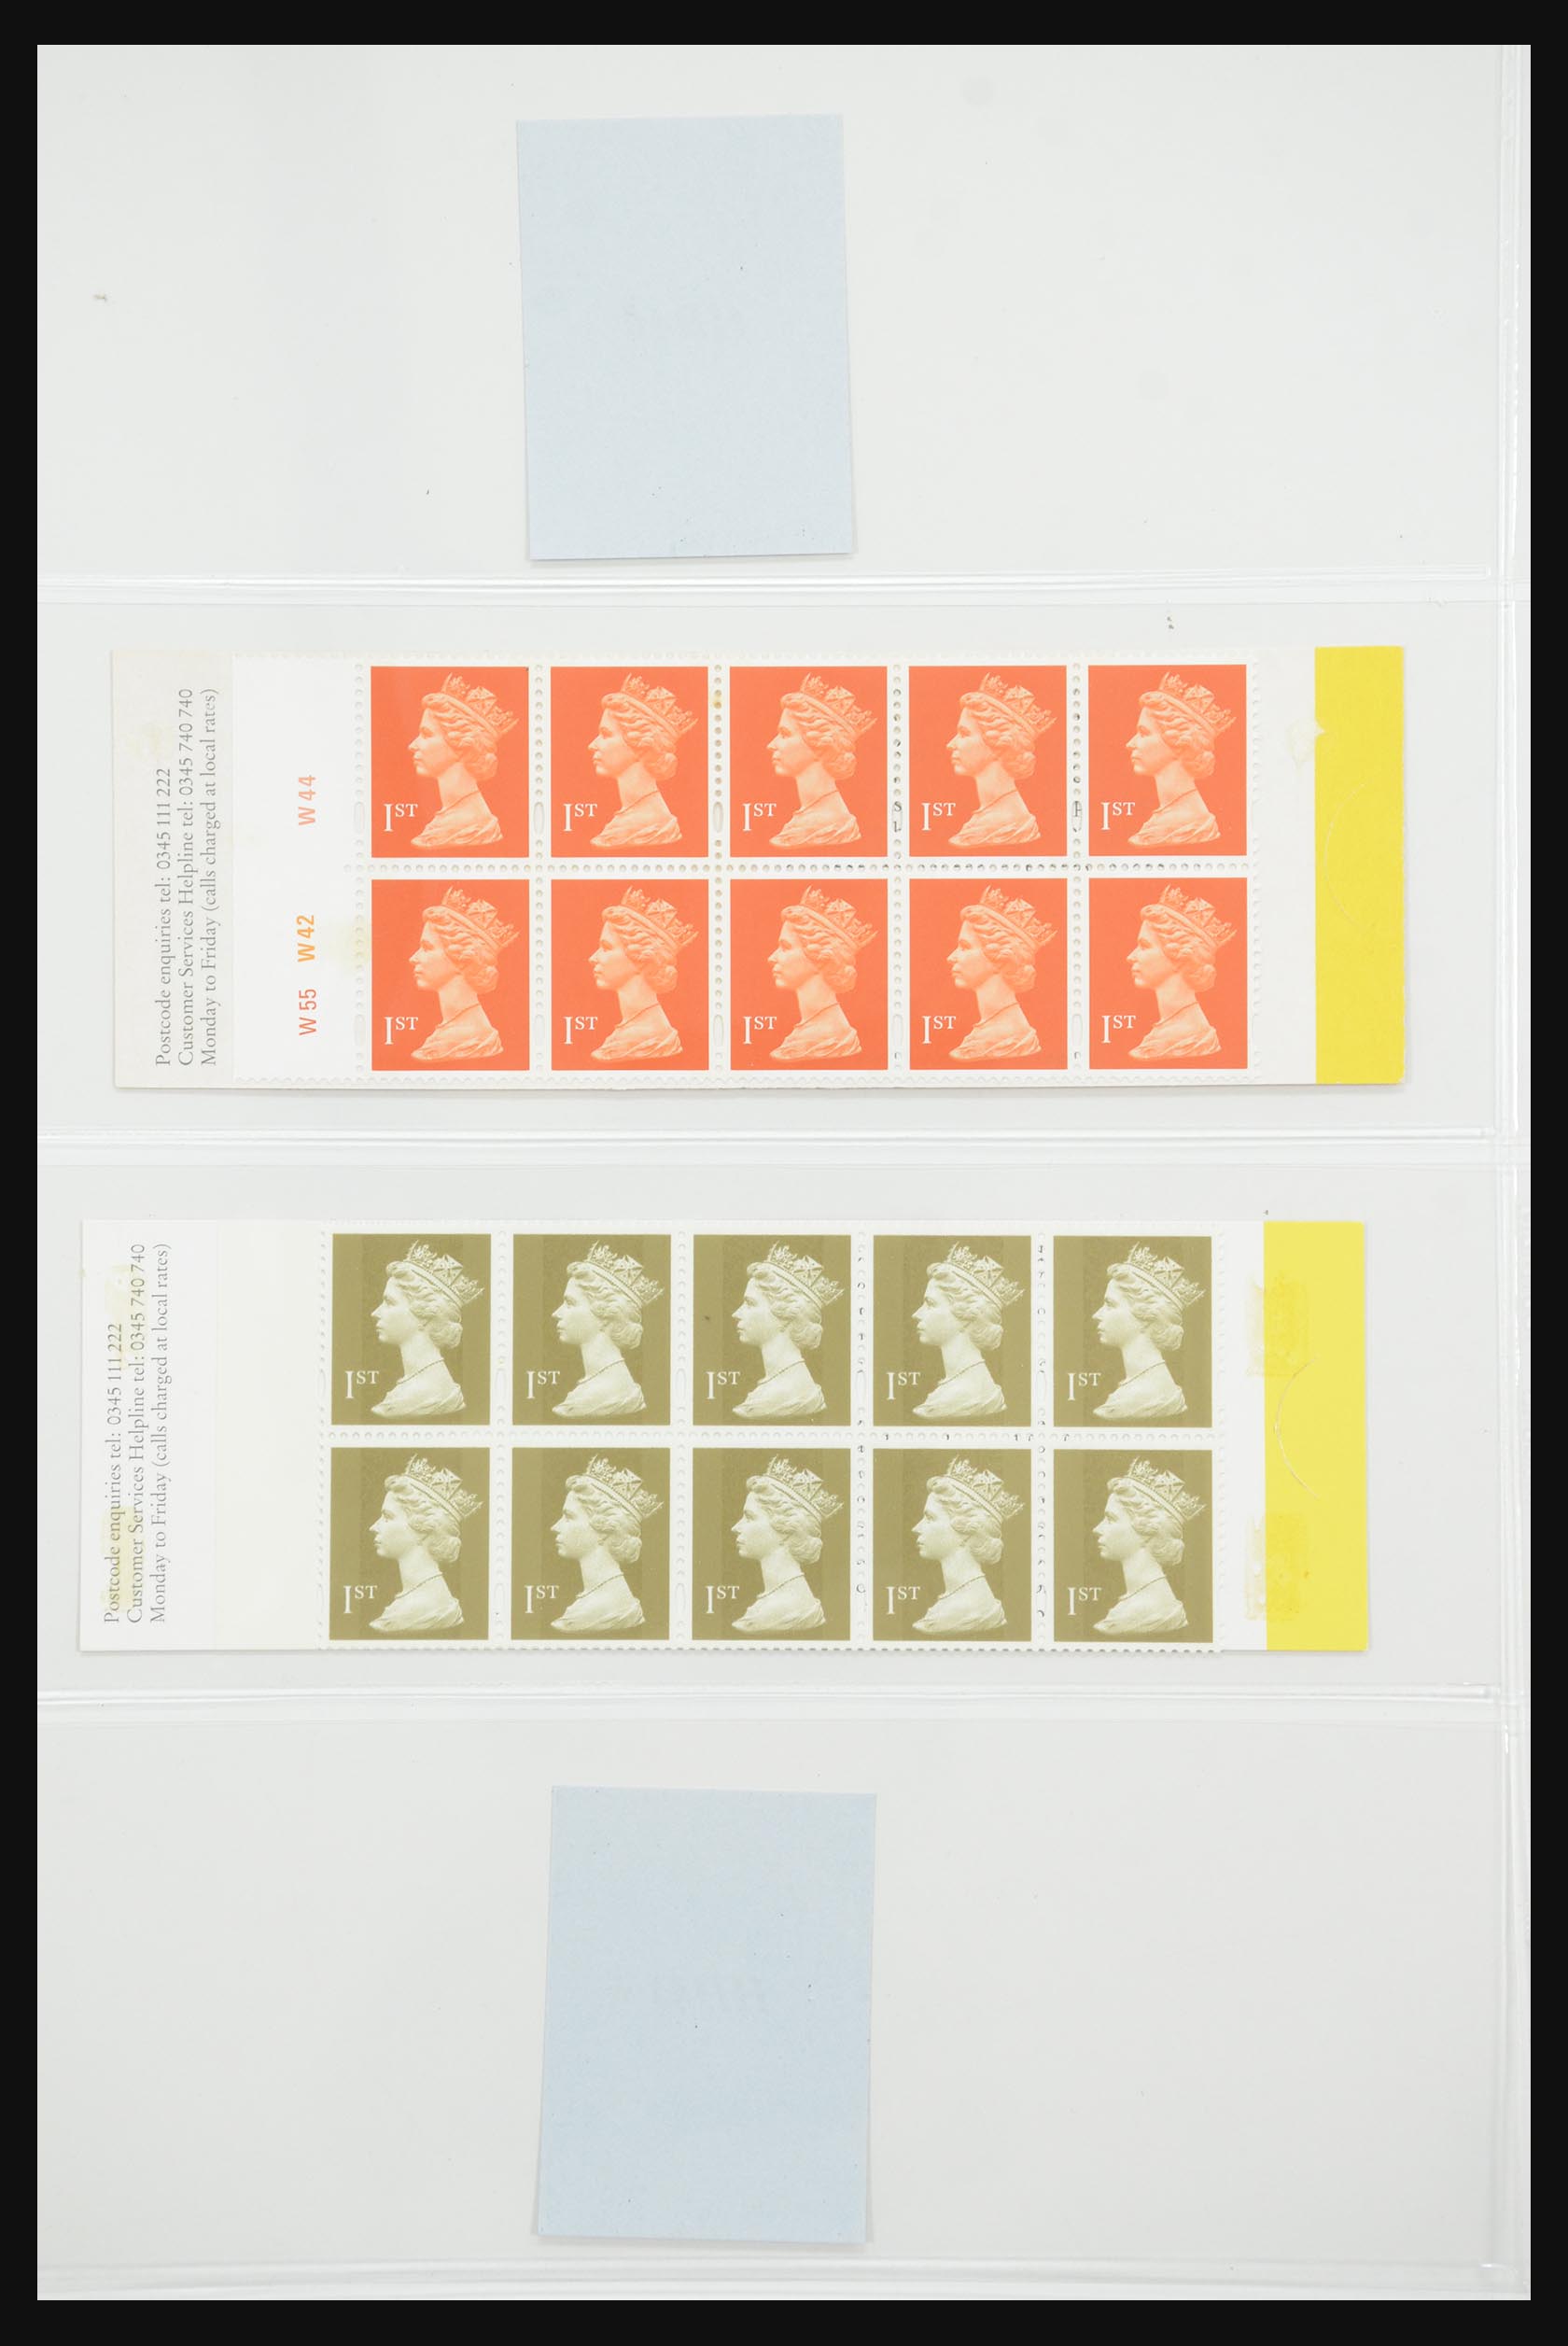 31960 160 - 31960 Engeland postzegelboekjes 1989-2000.